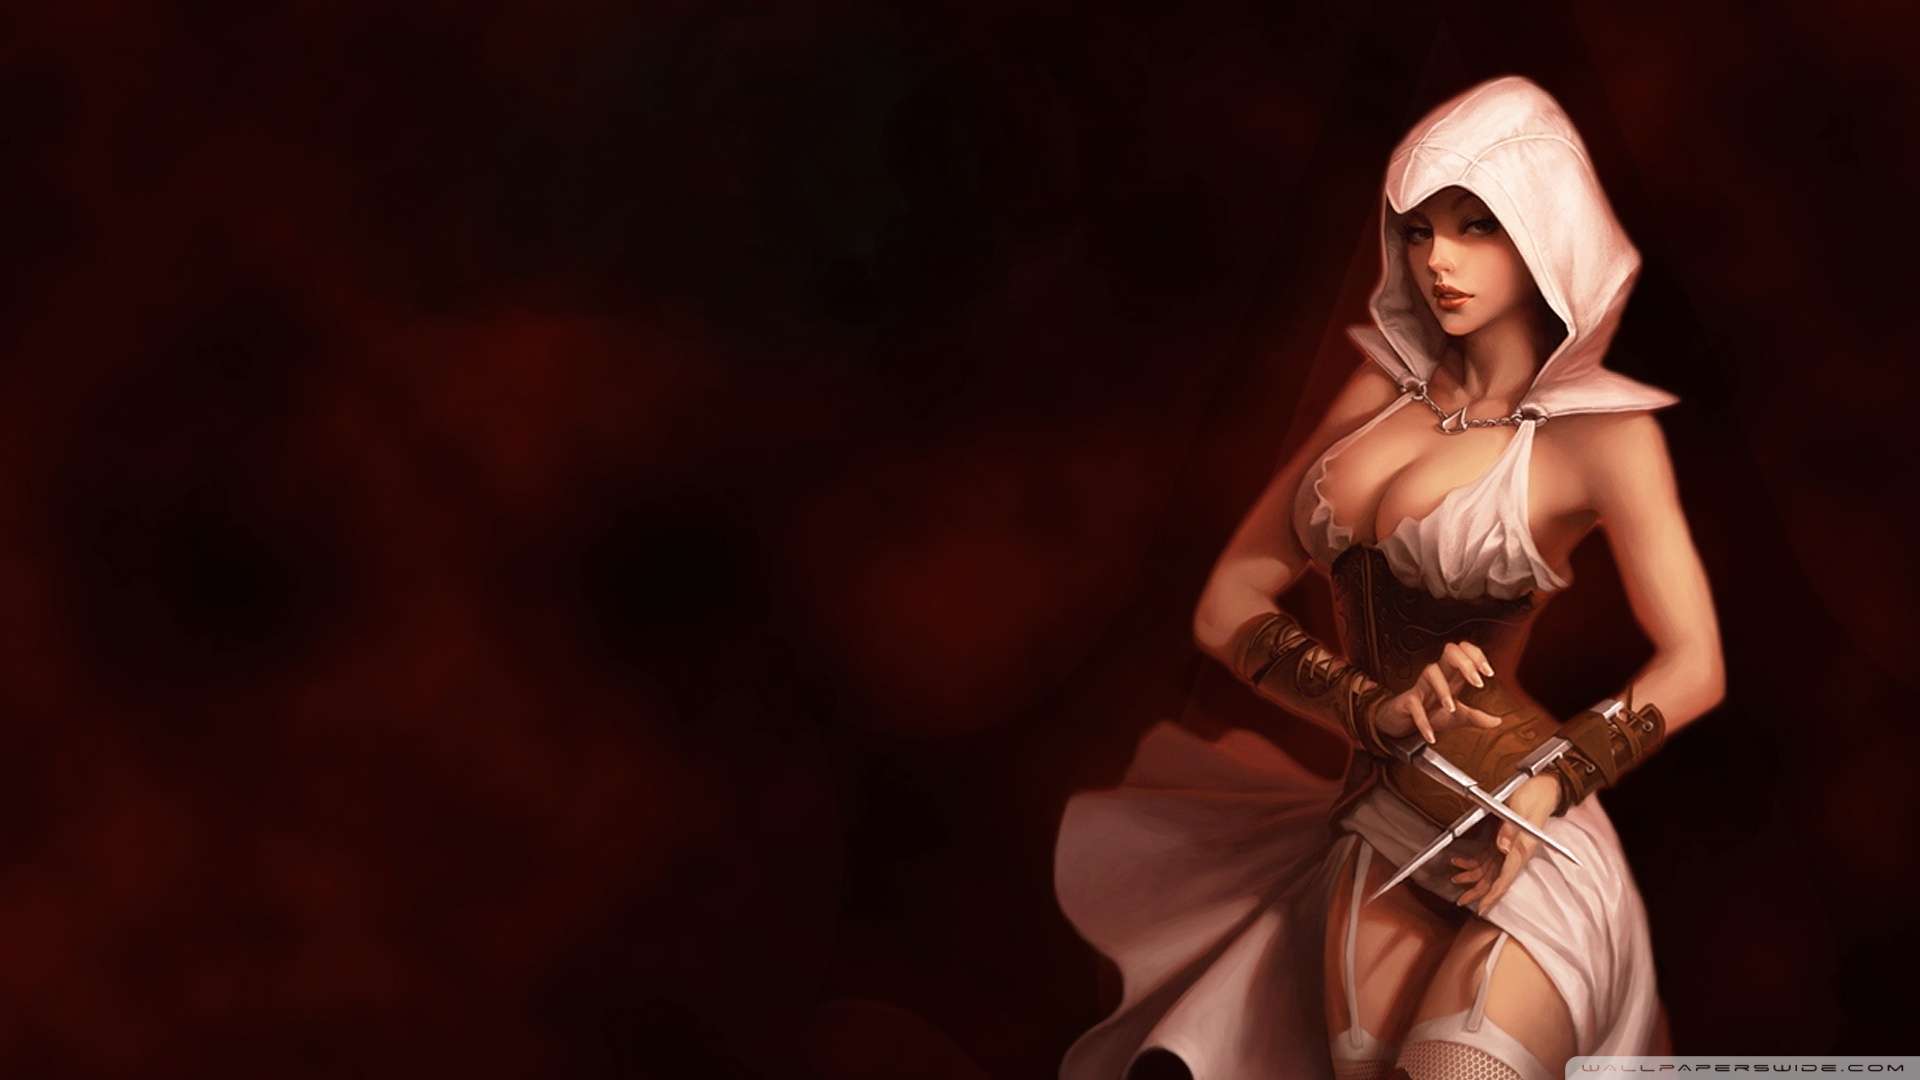 Wallpaper Assassins Creed Girl 1080p HD Upload At January